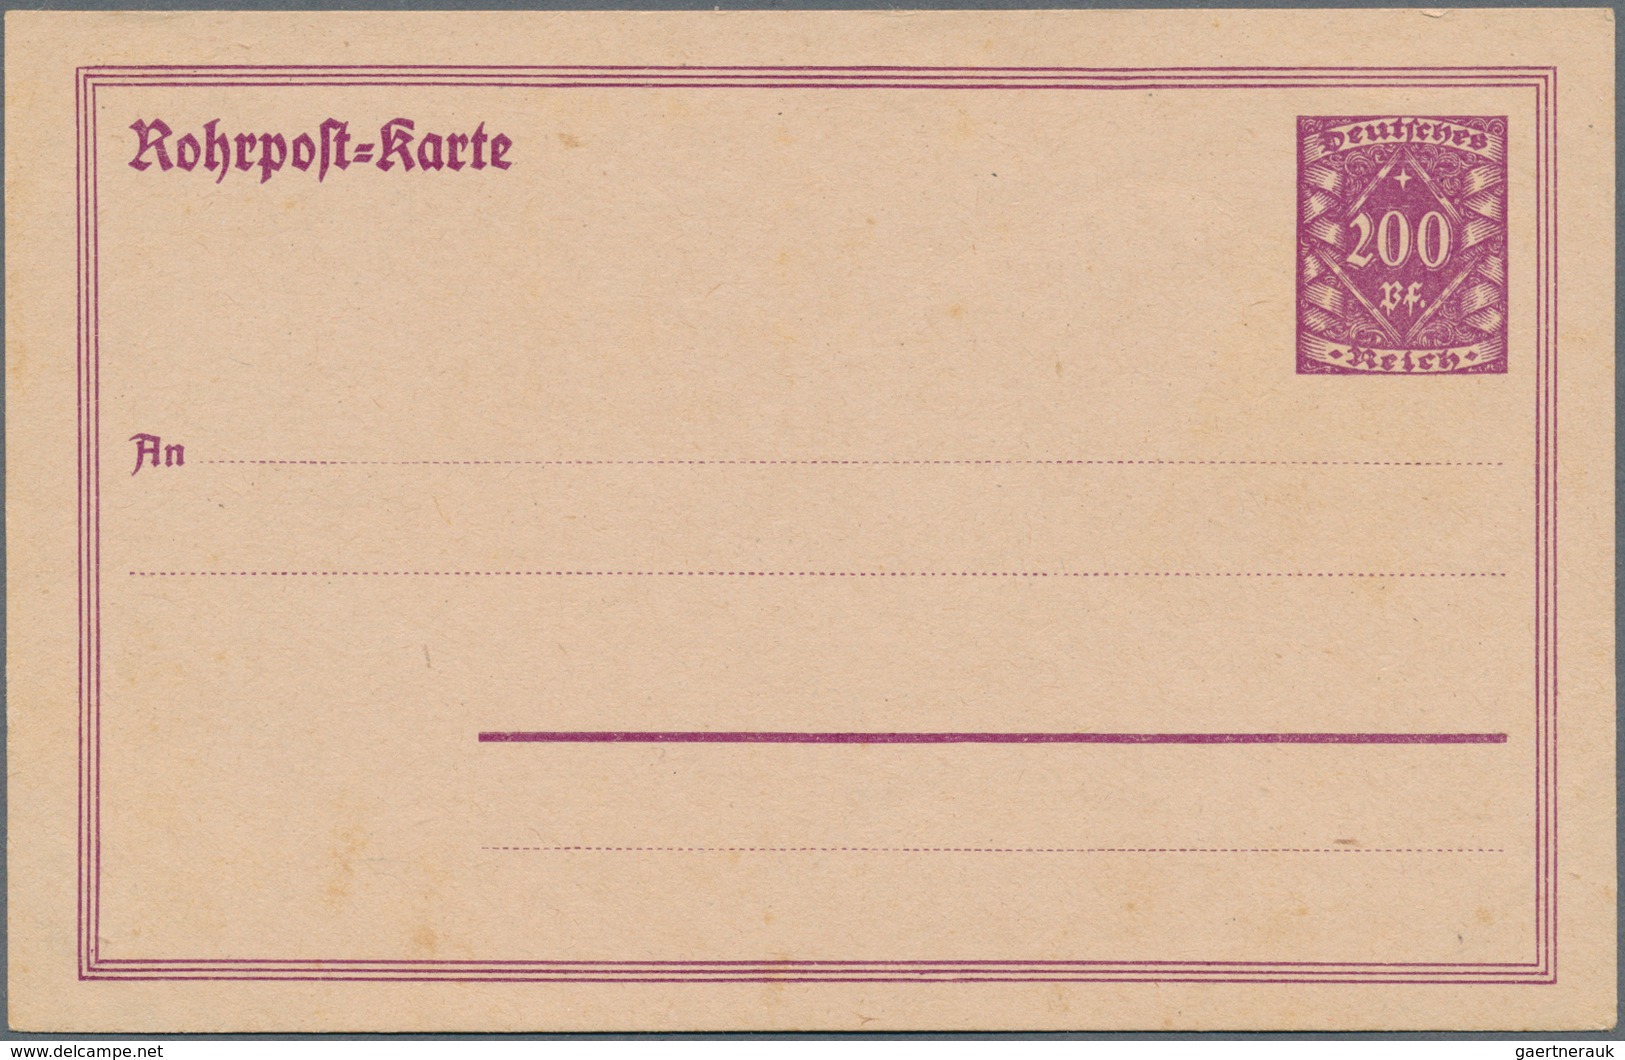 31753 Deutsches Reich - Ganzsachen: 1872/1941, vielseitige Sammlung von ca. 245 Ganzsachen, ungebraucht un